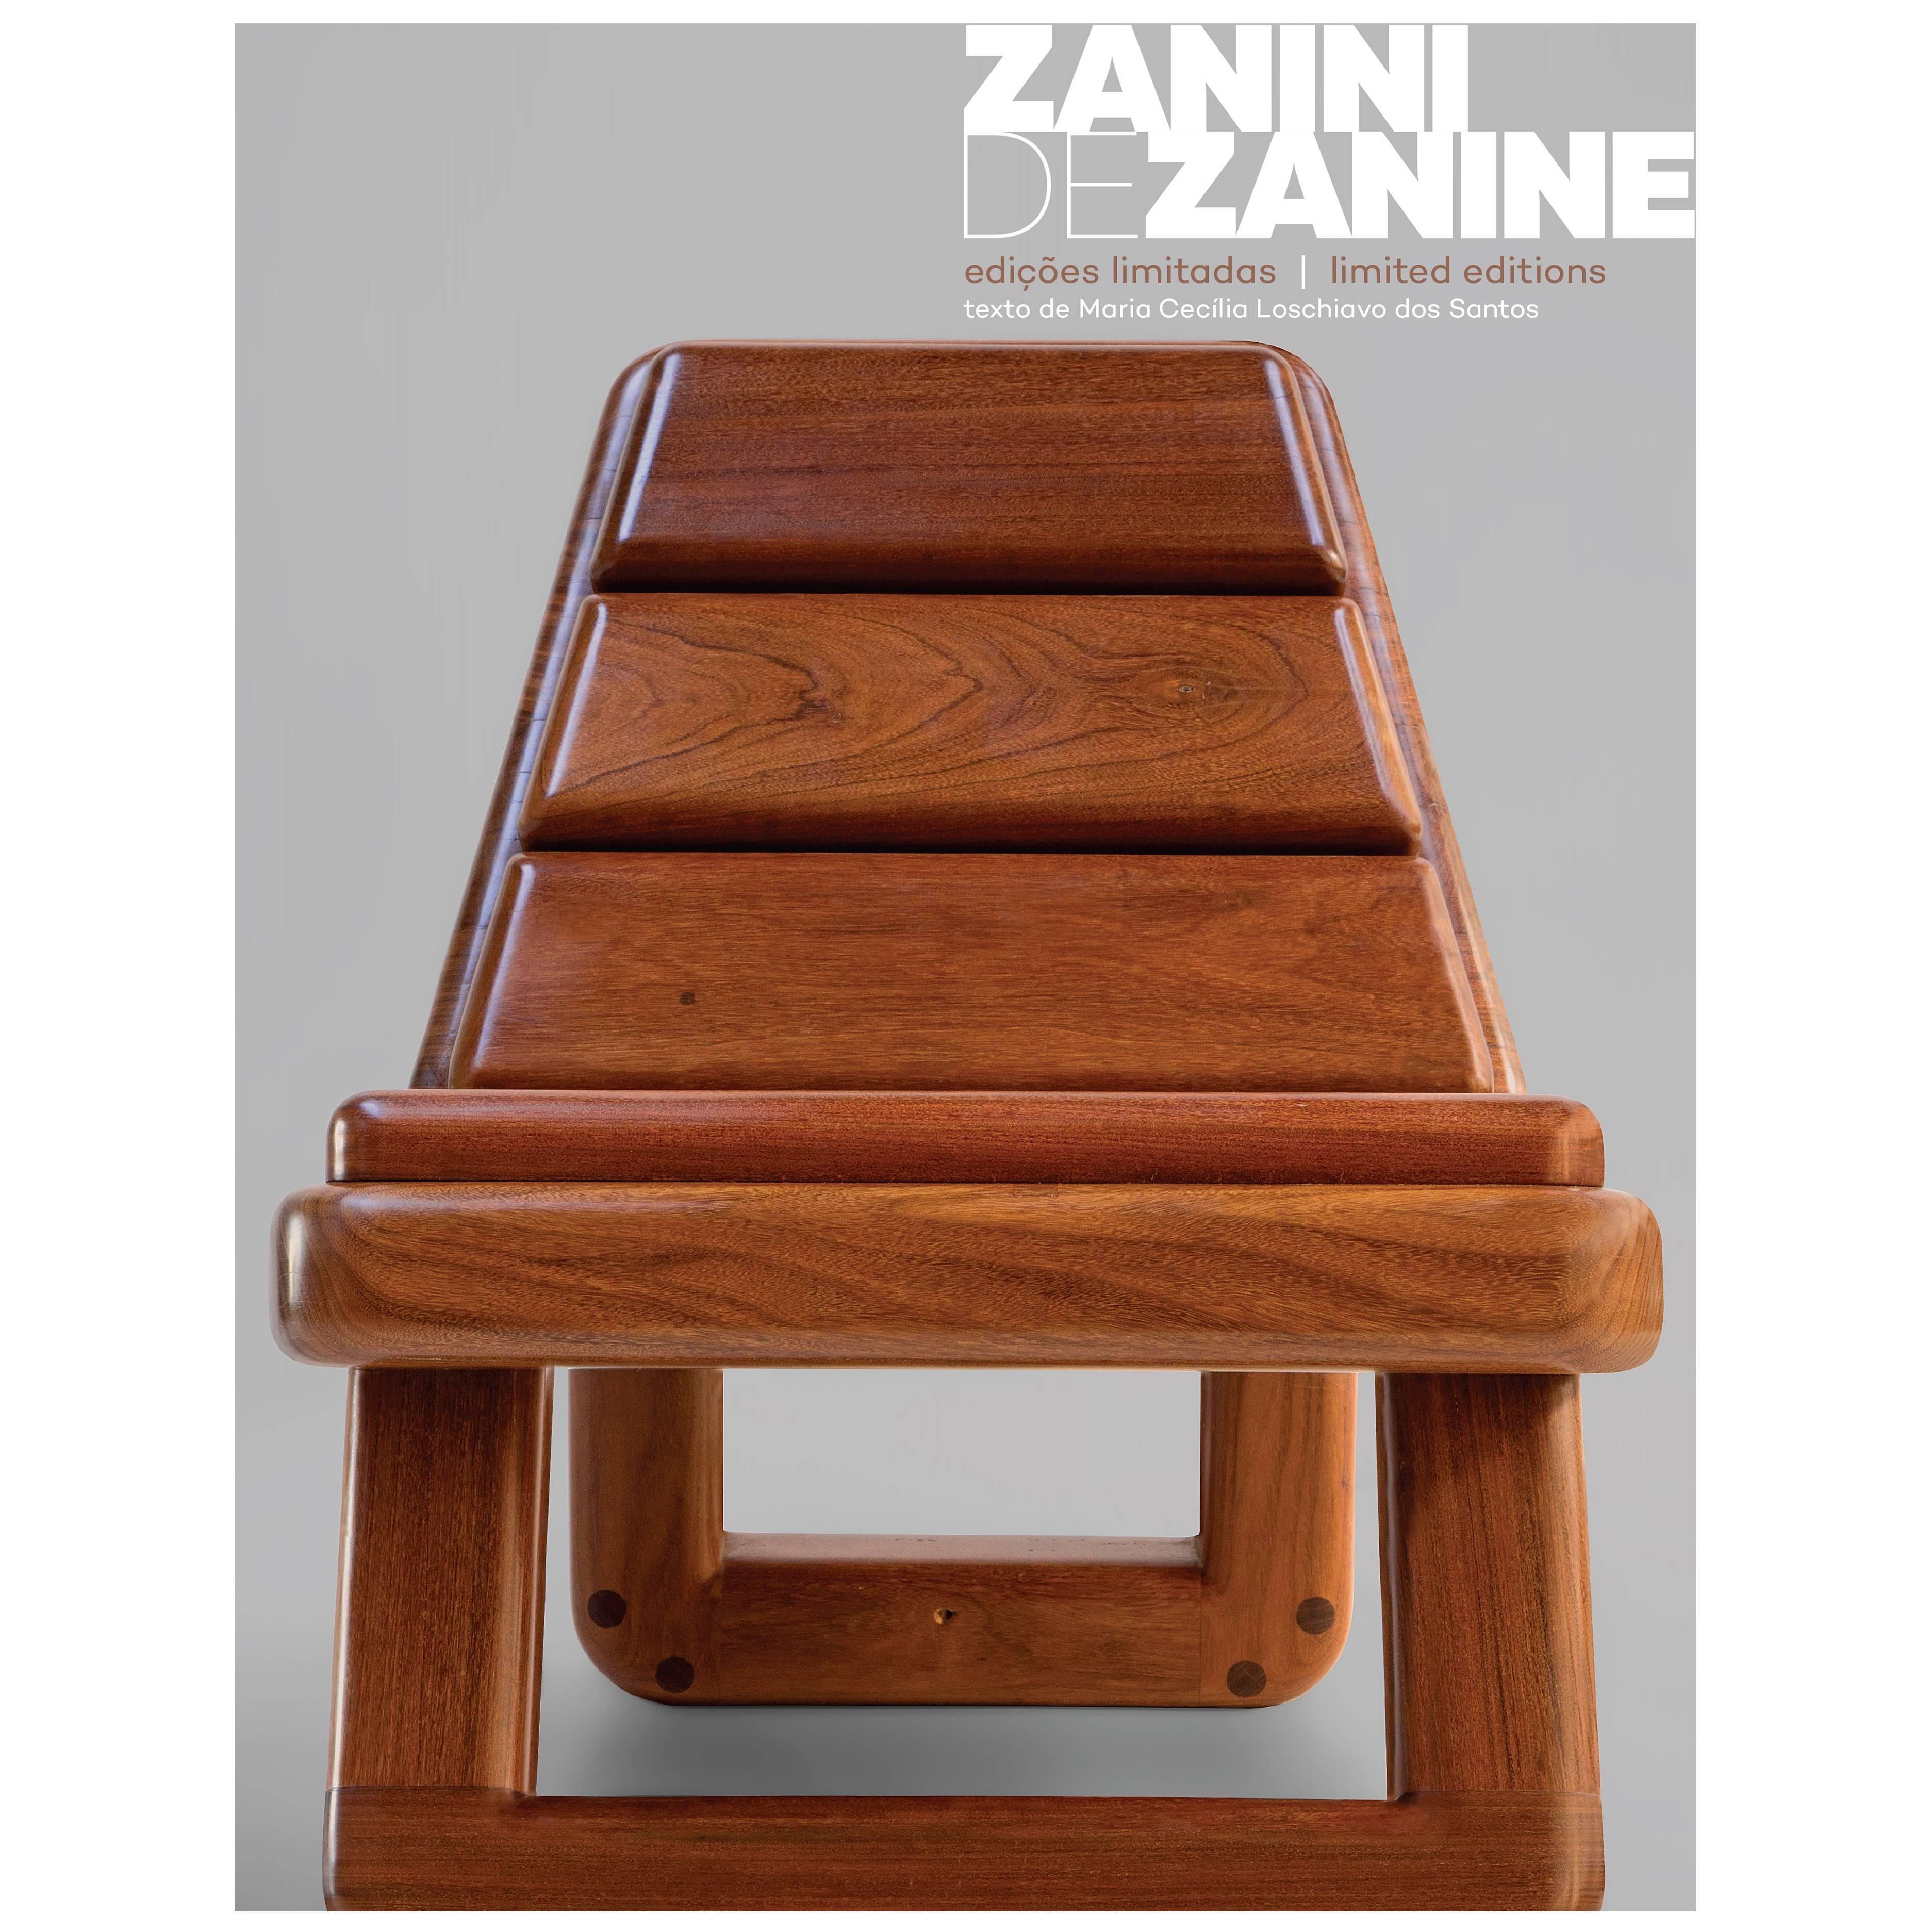 "Zanini de Zanine - Limited Editions" Book For Sale